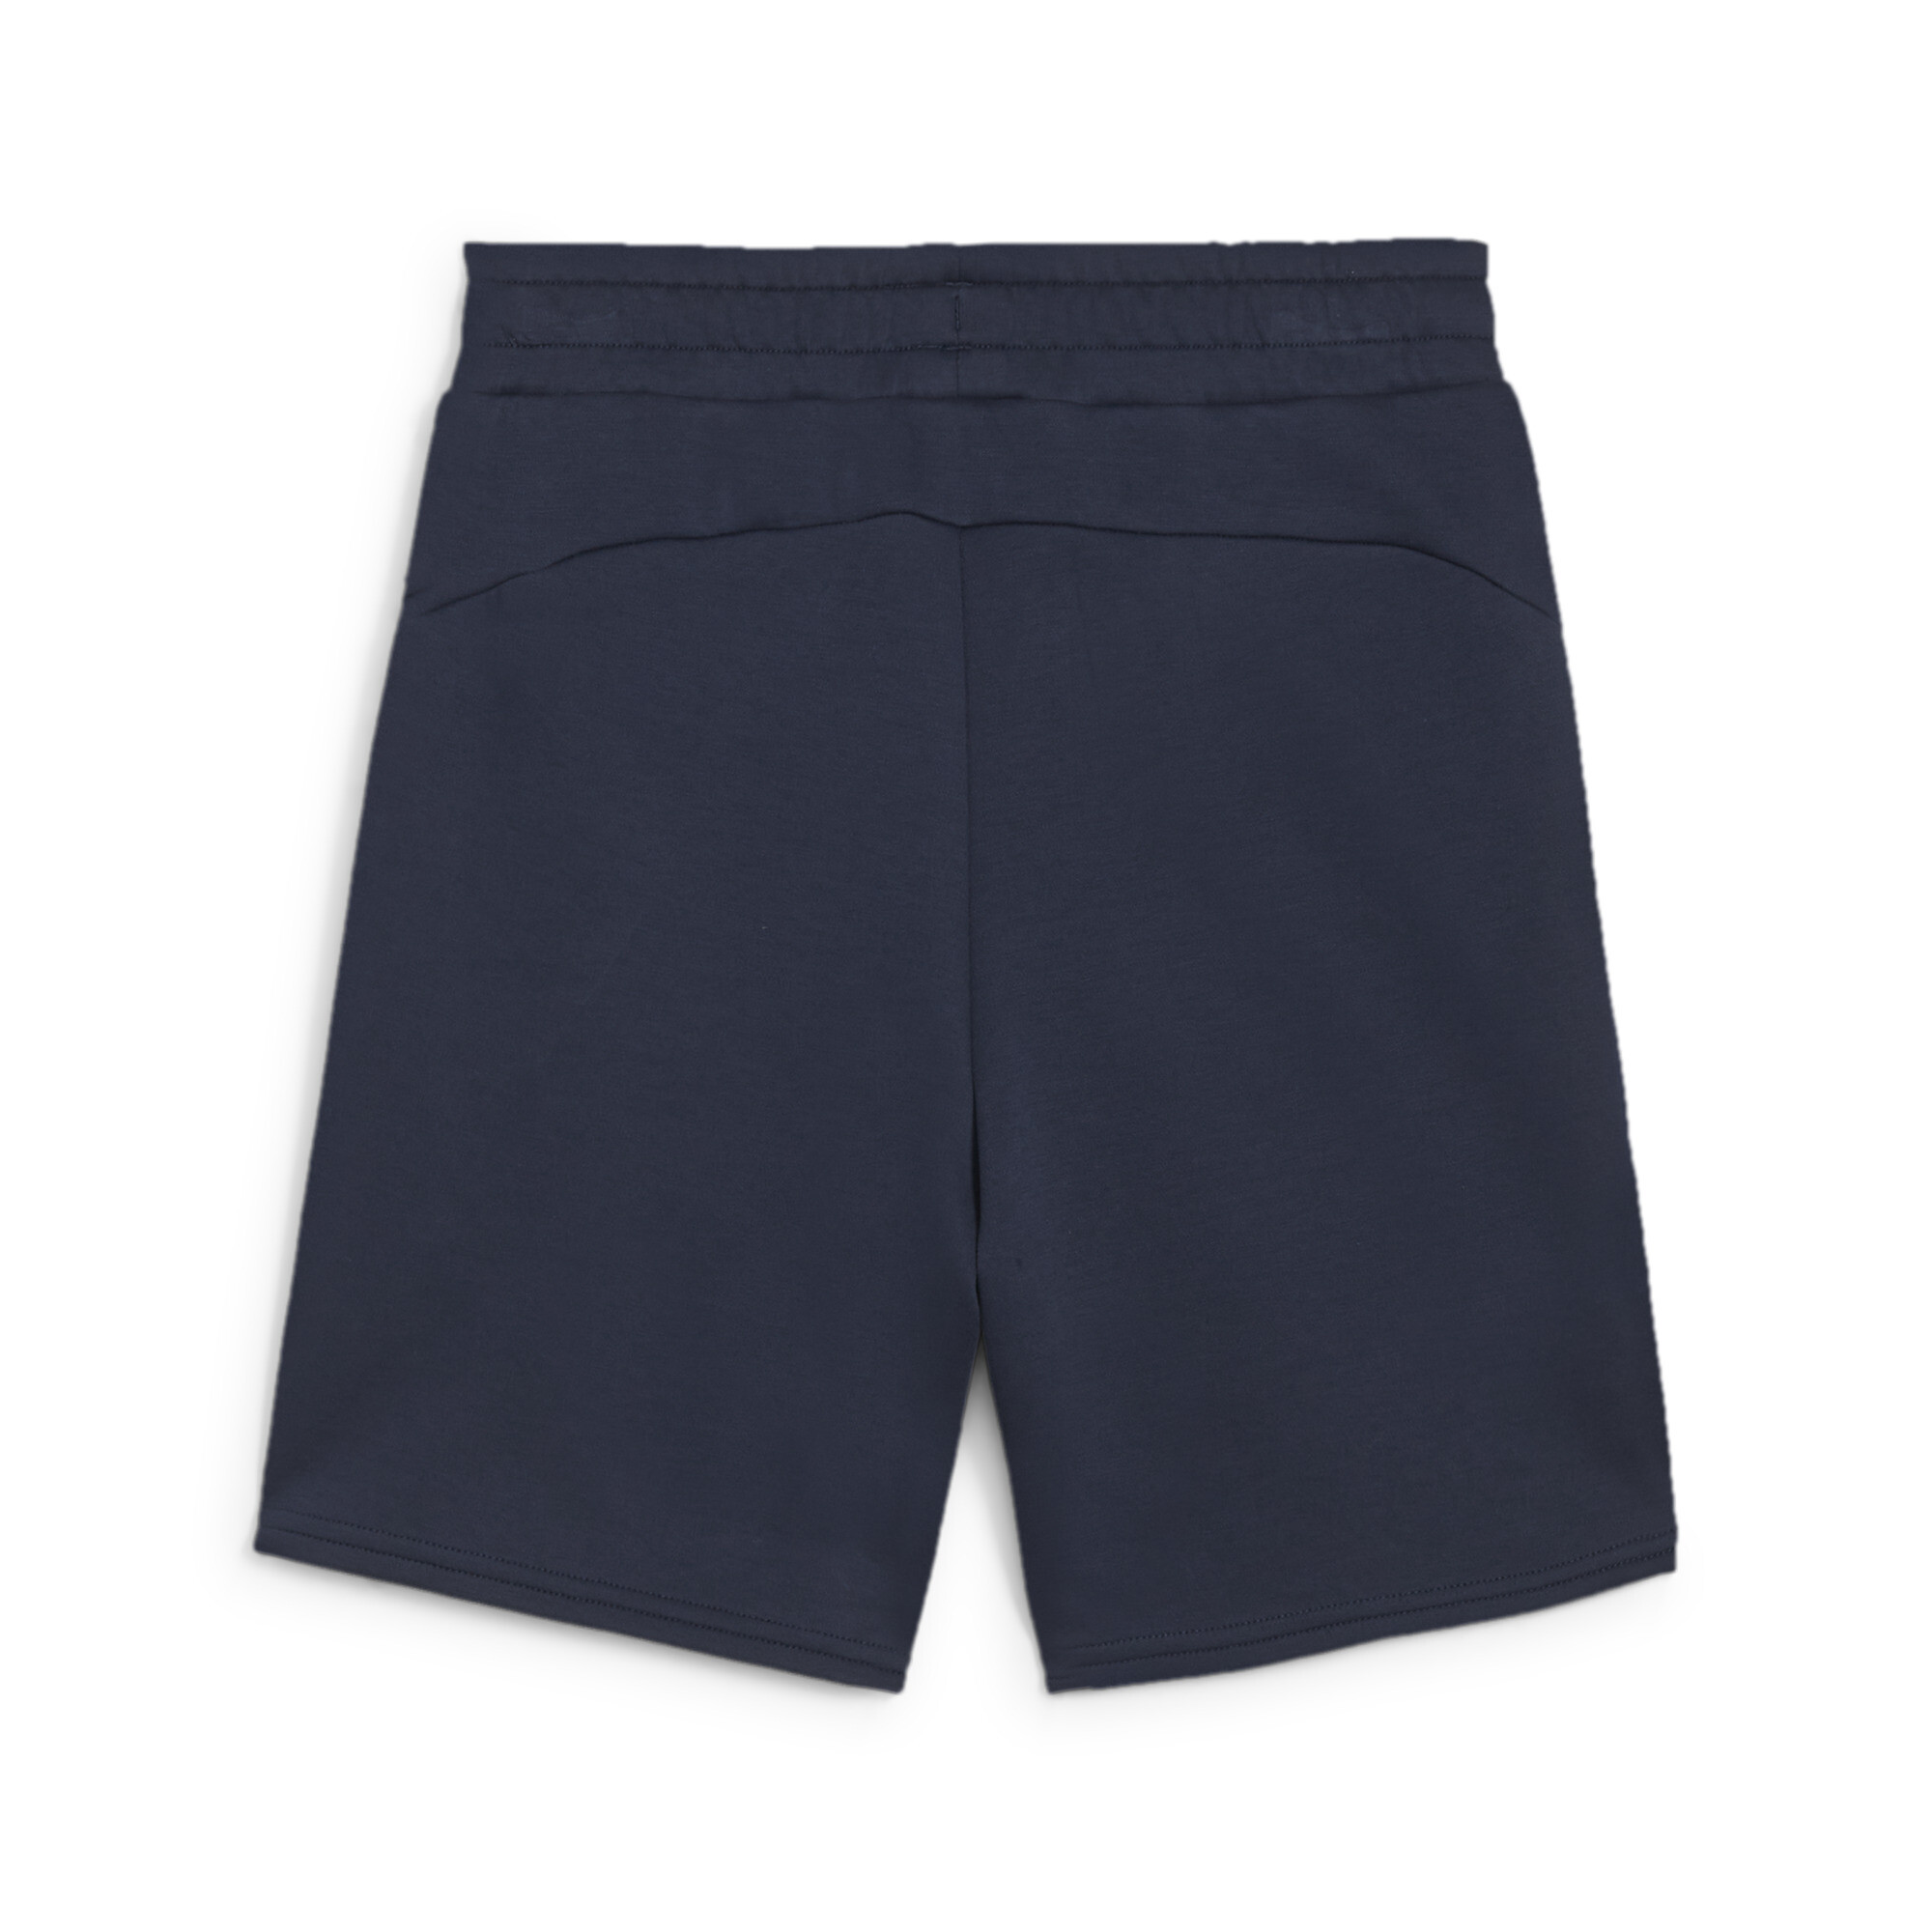 PUMA EVOSTRIPE Shorts In Blue, Size 11-12 Youth